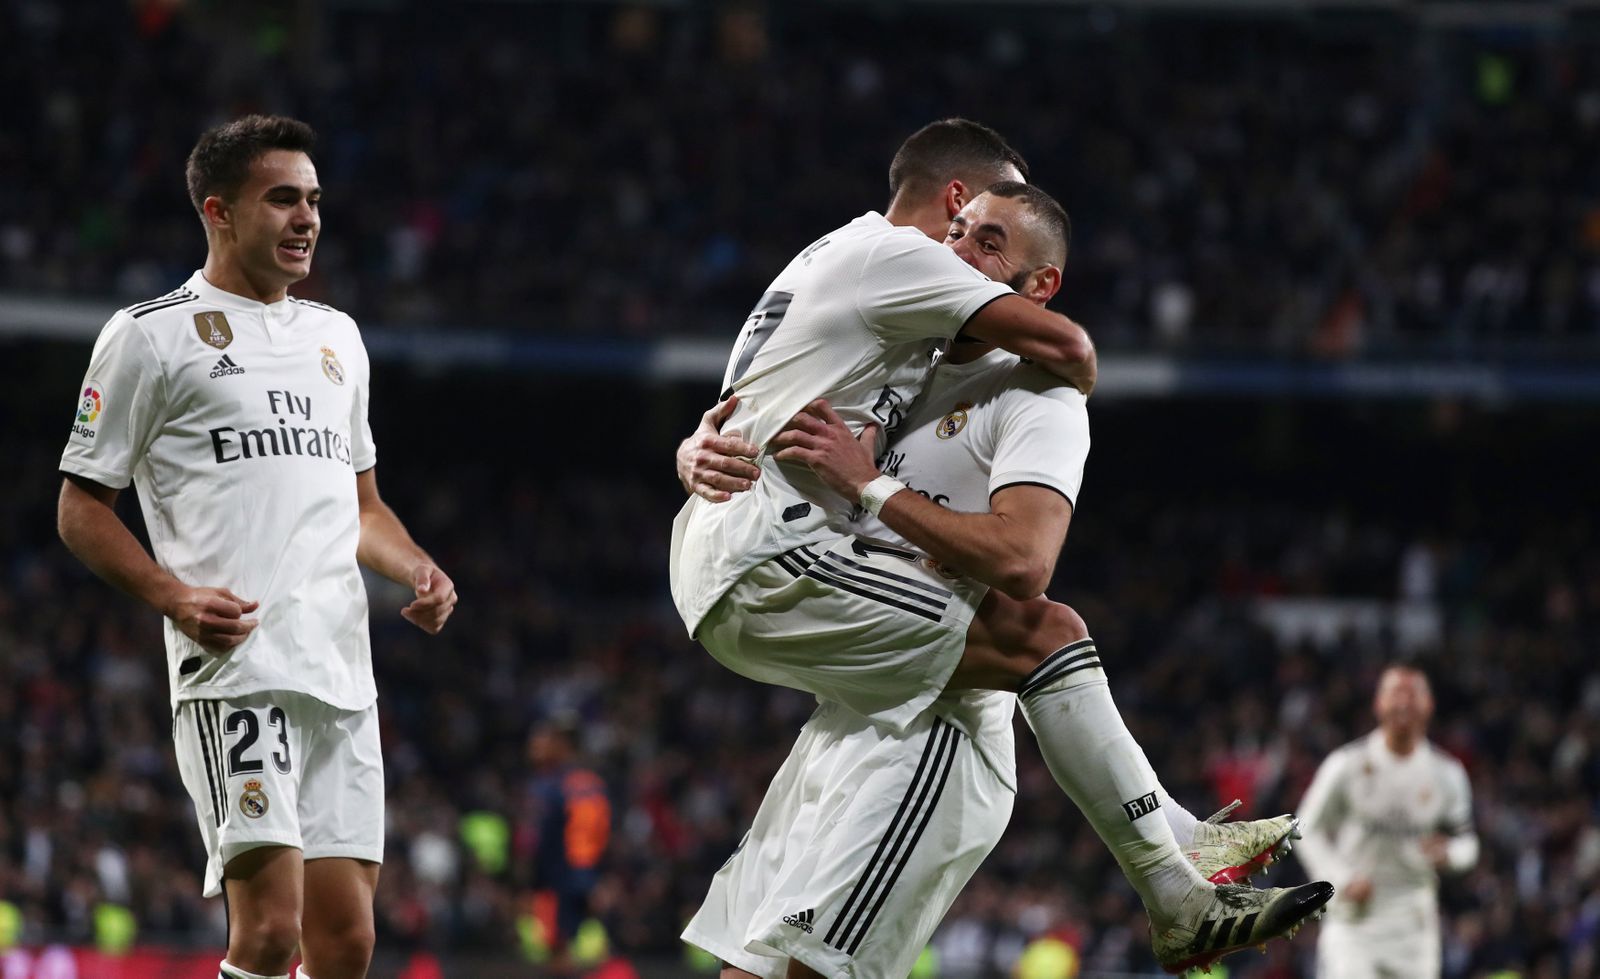 fotbal, španělská liga 2018/2019, Real Madrid - Valencie, Lucas Vázquez slaví gól v náruči Karima Benzemy